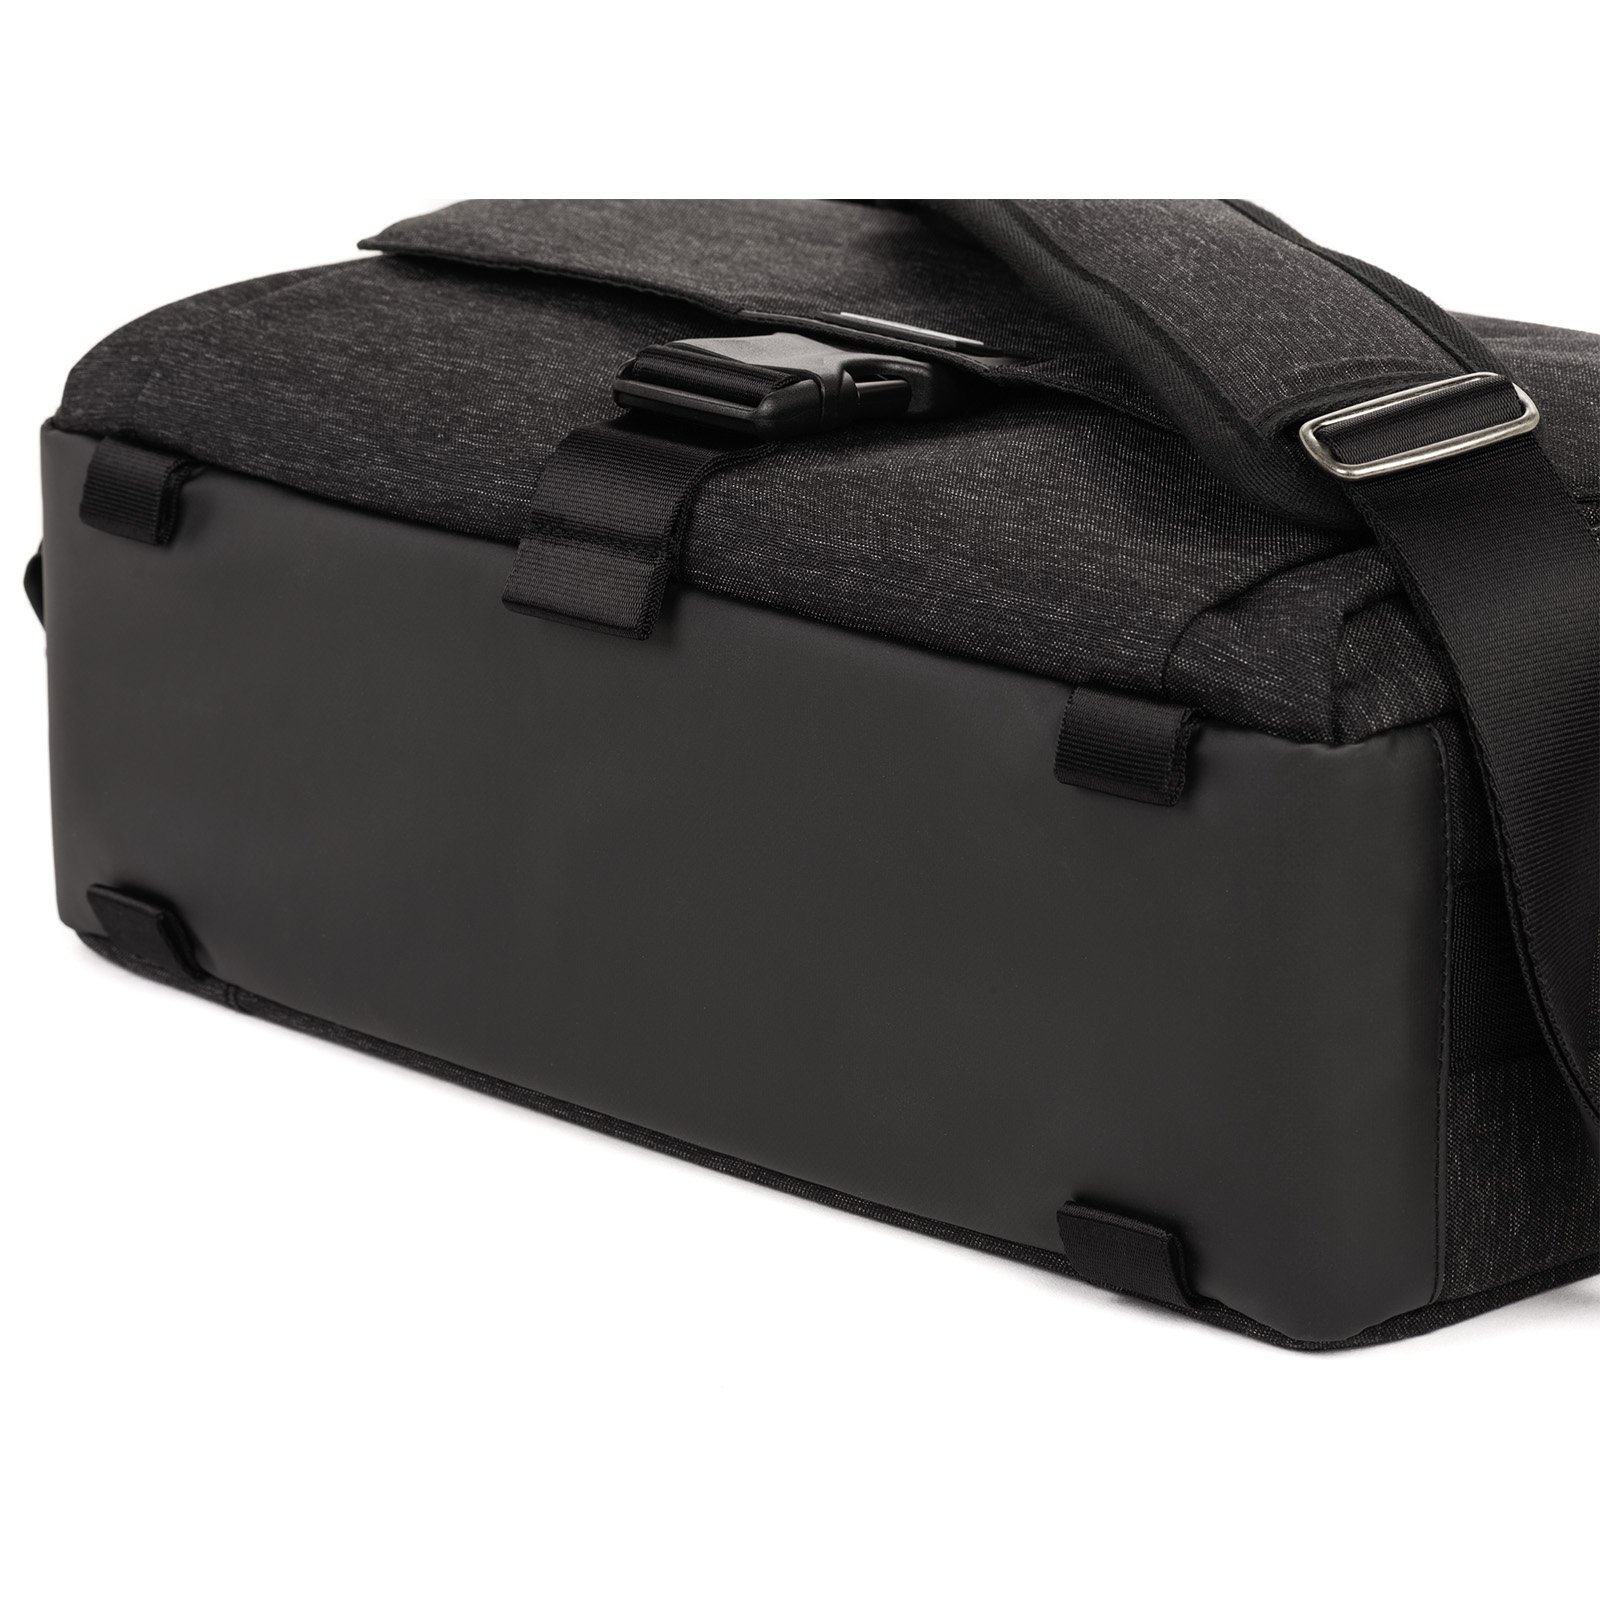 Túi đeo máy ảnh Think Tank Vision 15 - Hàng chính hãng